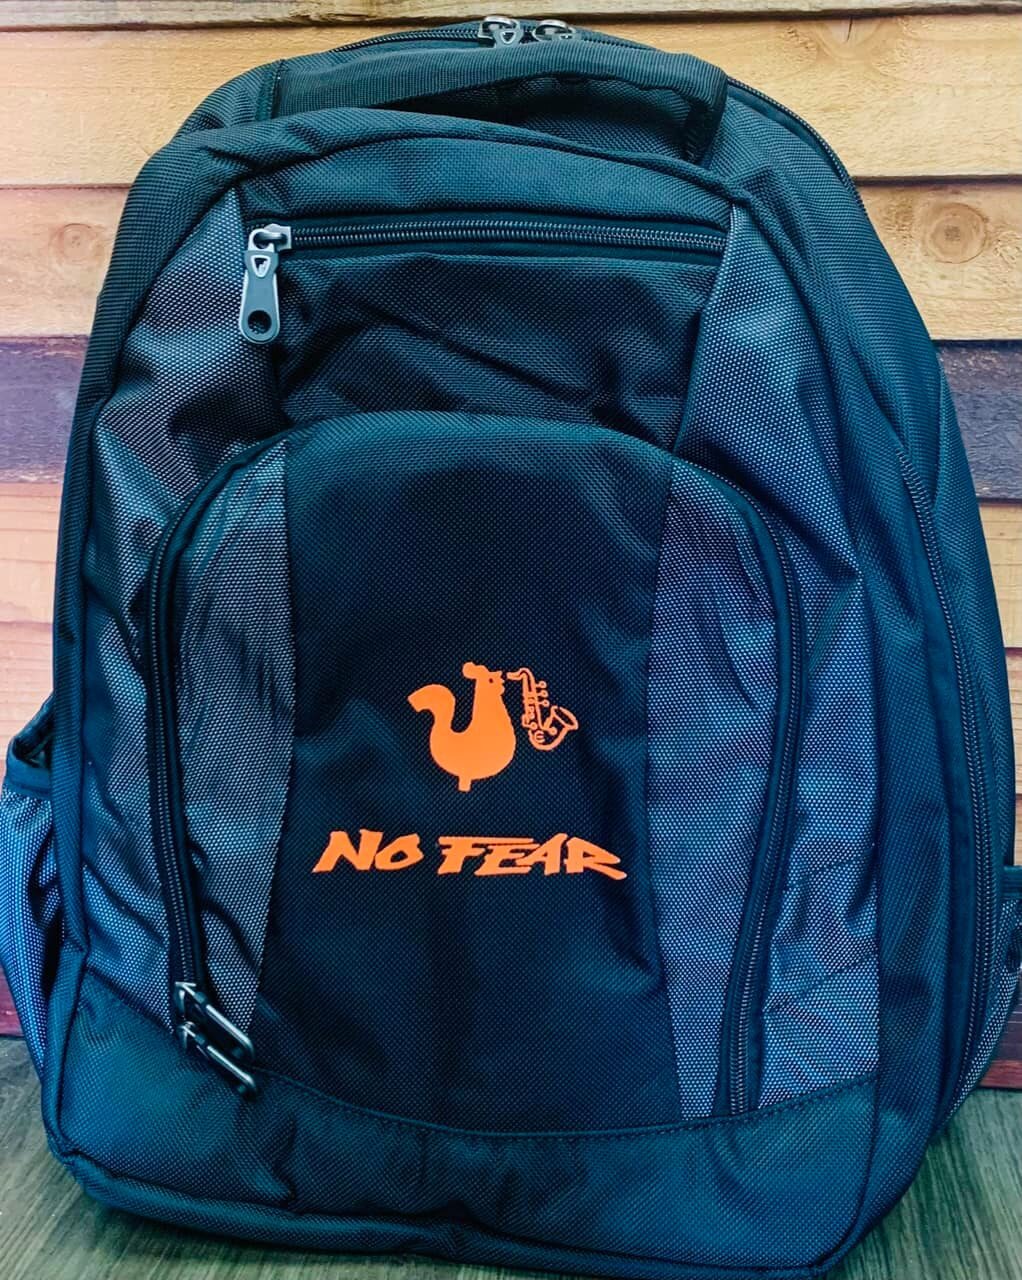 no fear backpack.jpg